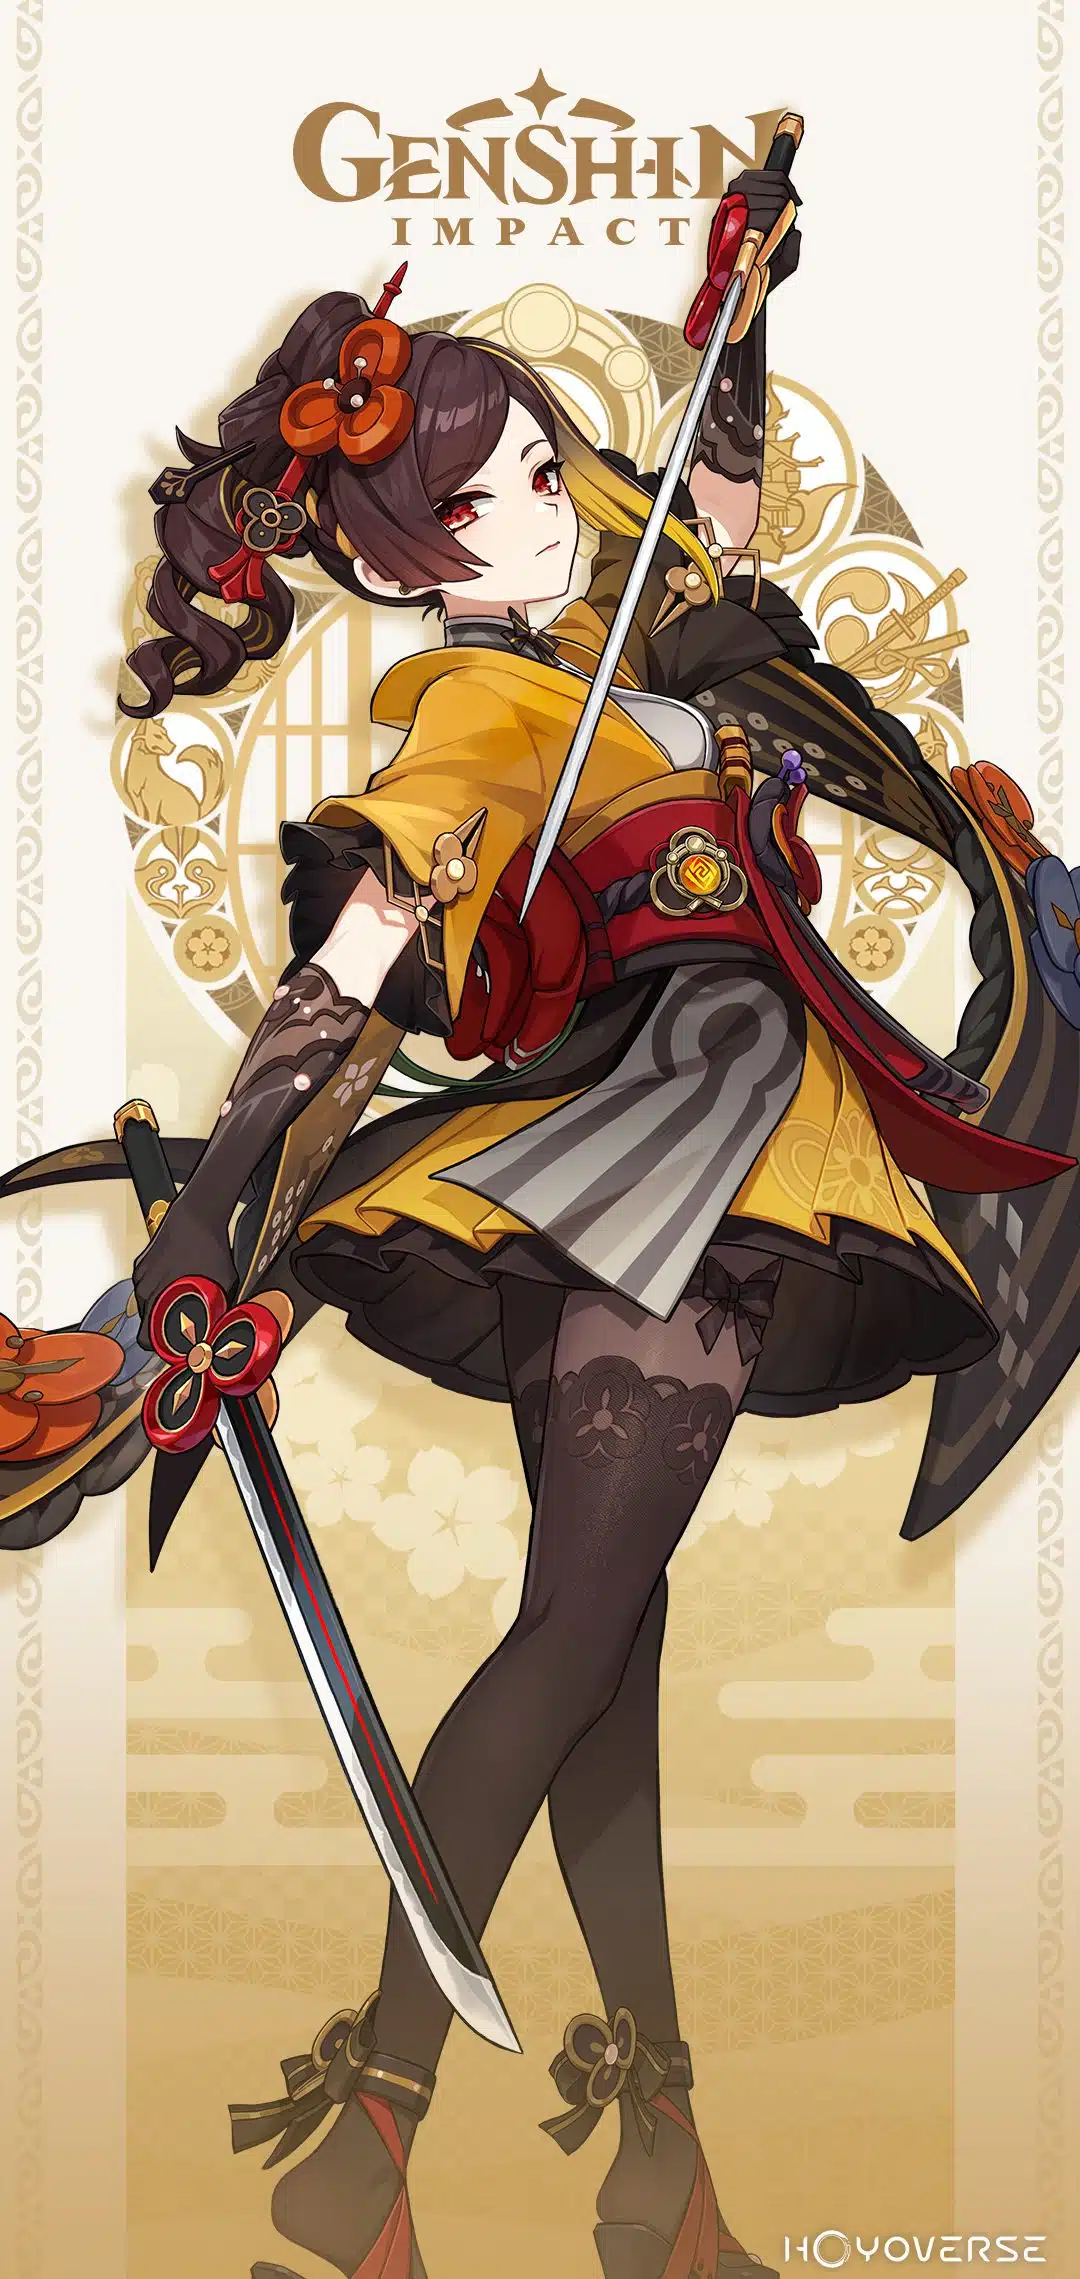 Chiori de Genshin Impact com suas espadas duplas e roupas amarelas no anúncio da HoYoVerse